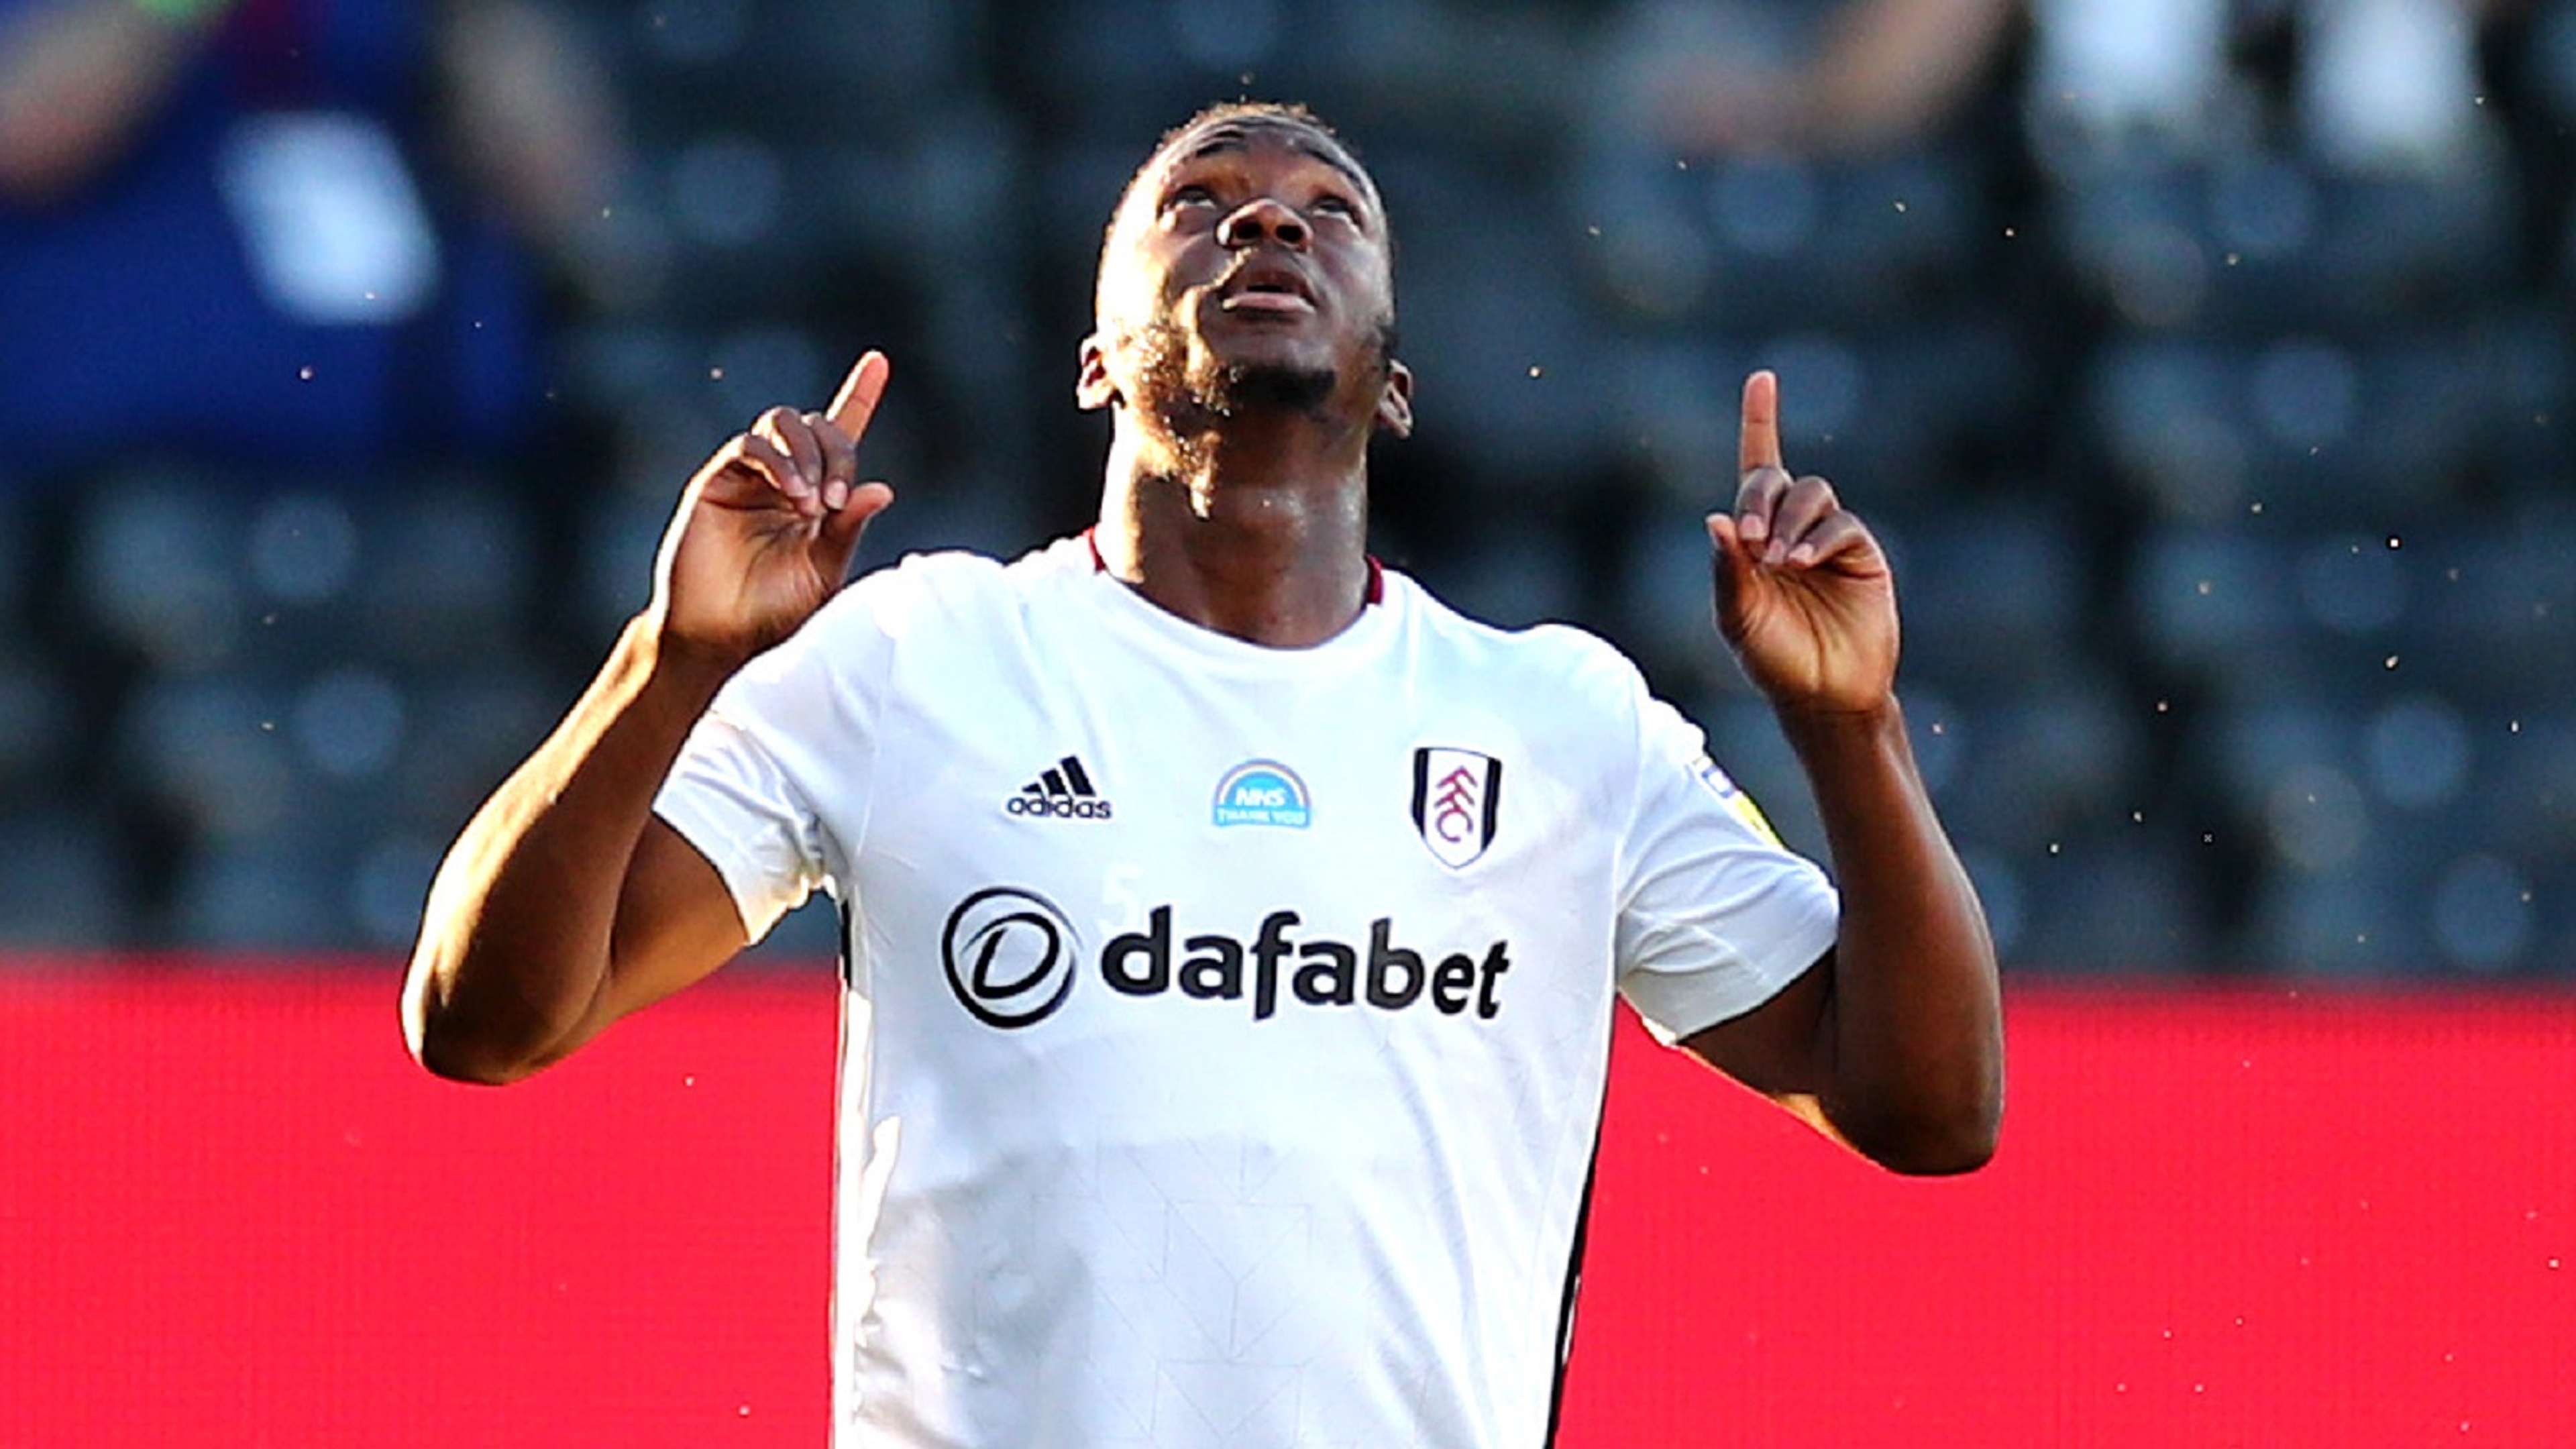 Neeskens Kebano Fulham 2019-20